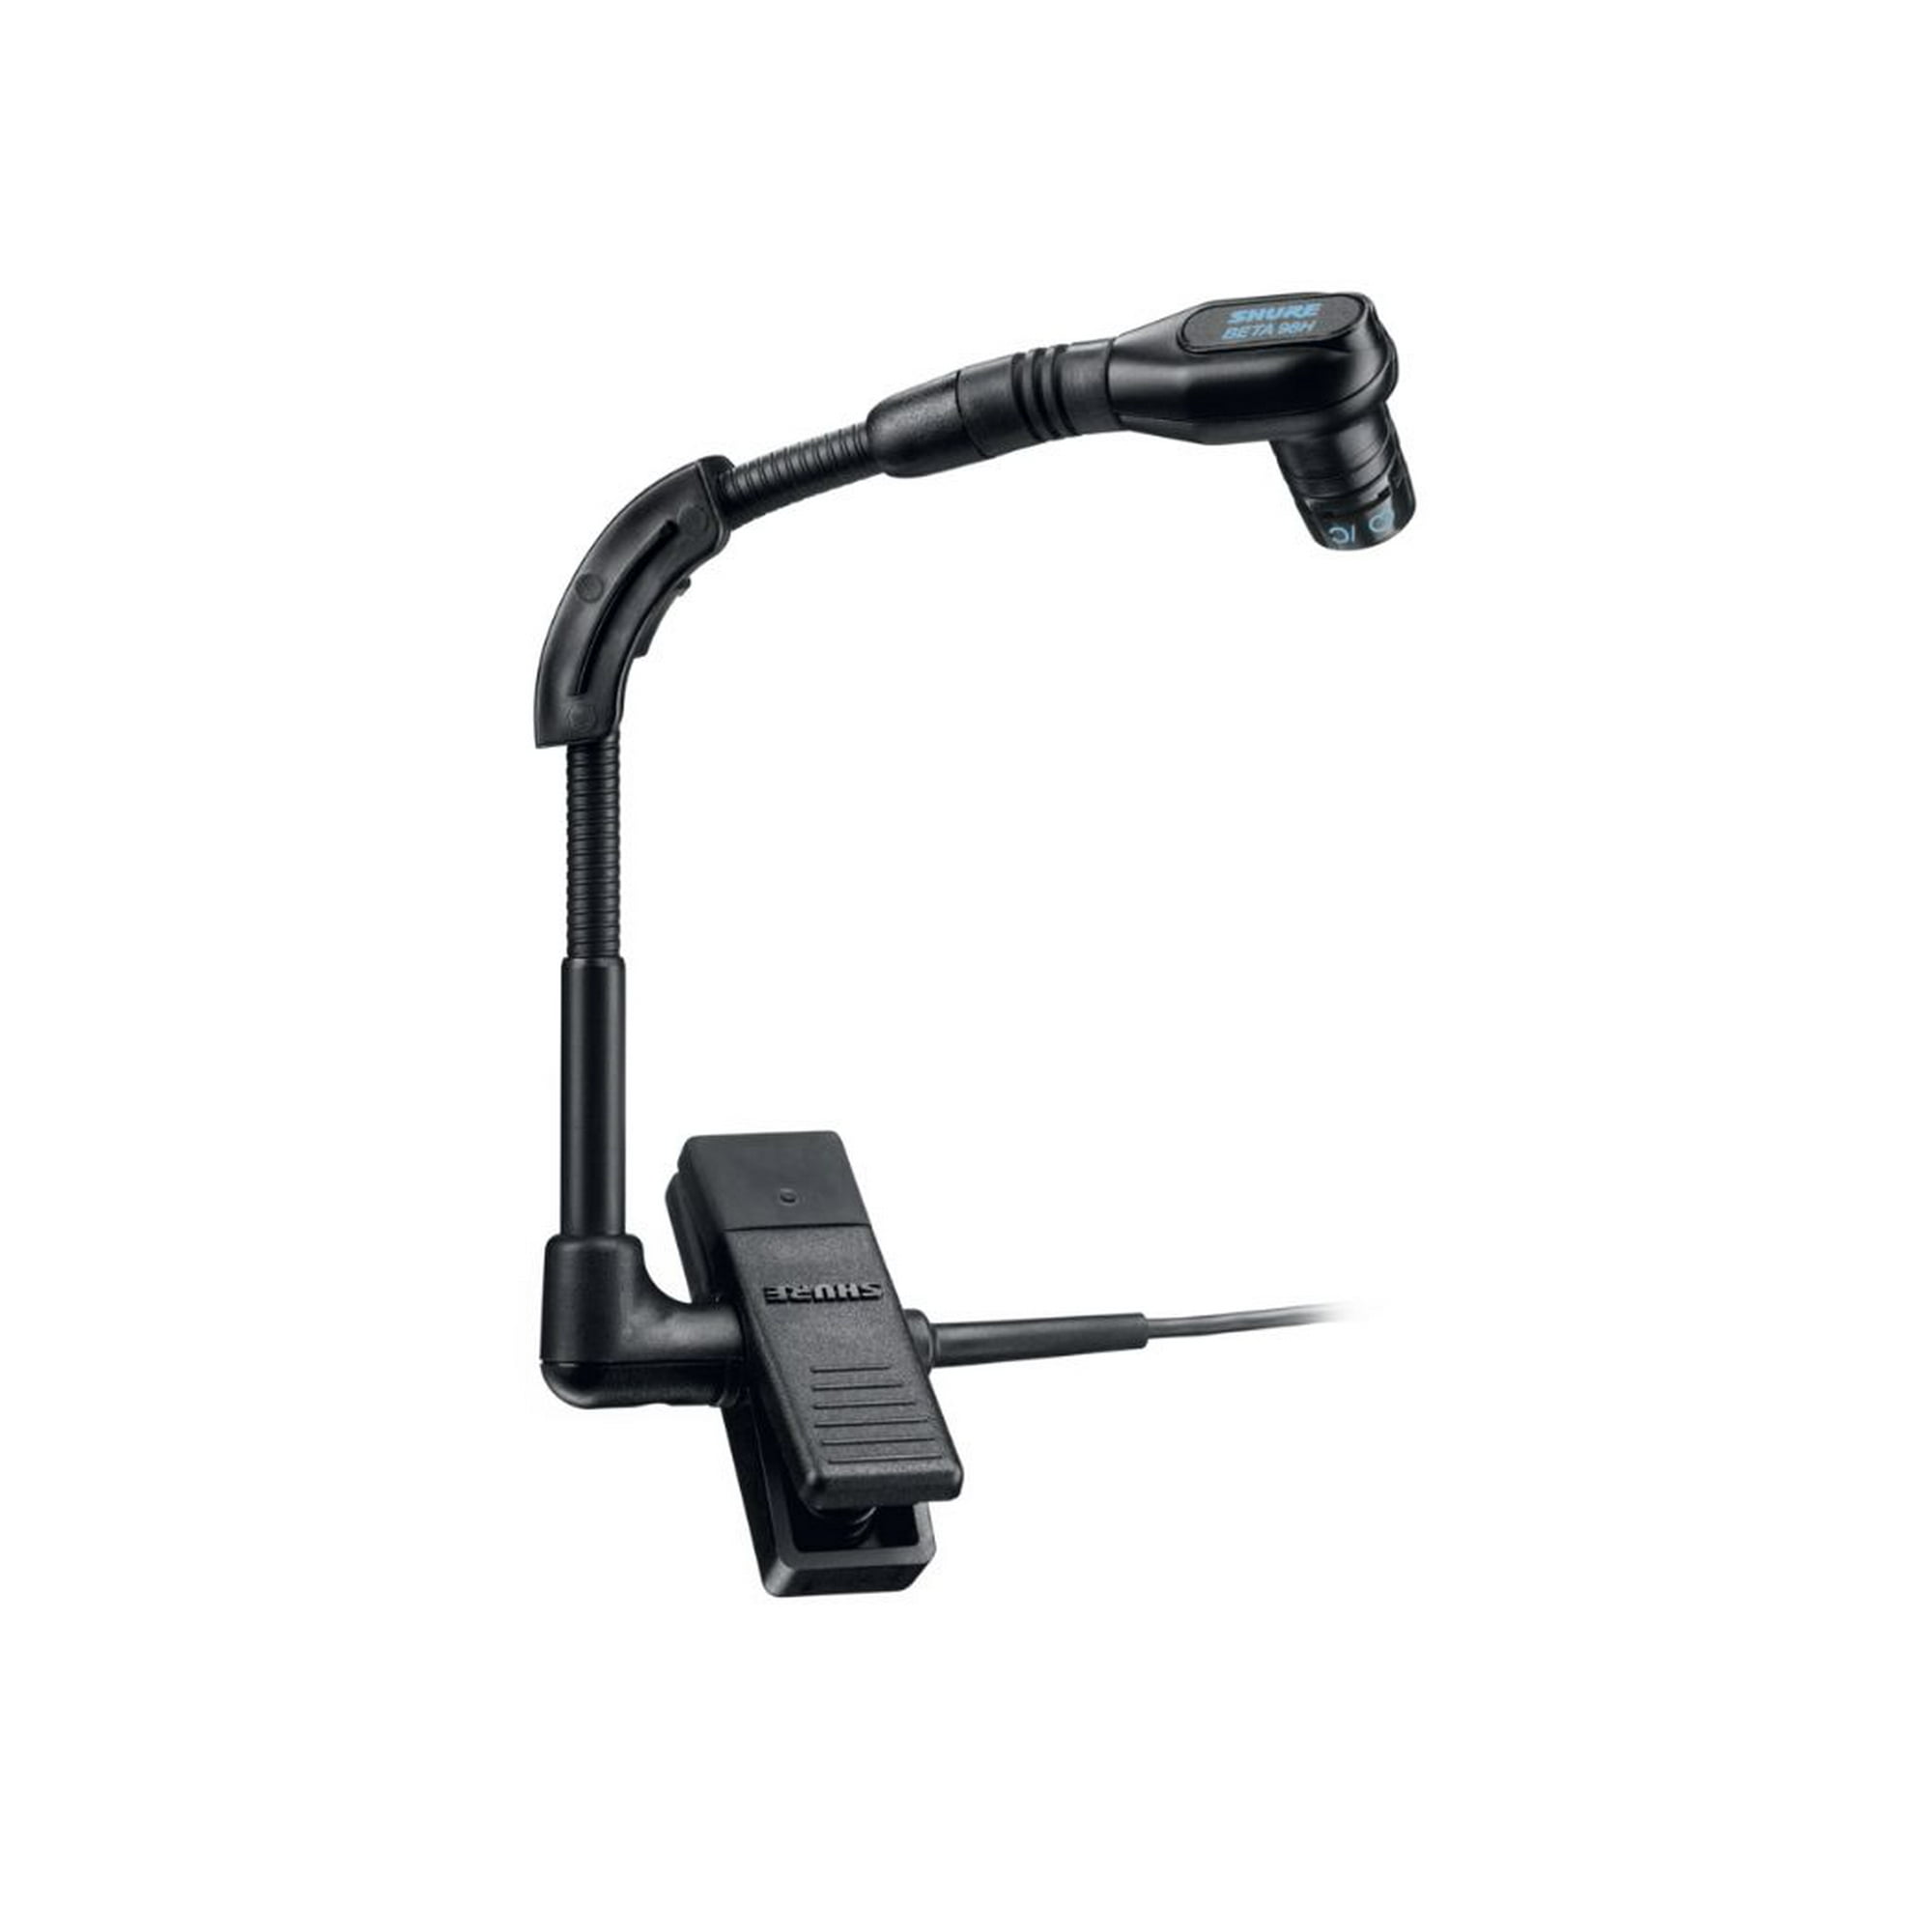 Micrófono Diadema Shure SM35-XLR Condensador Cuello Flexible